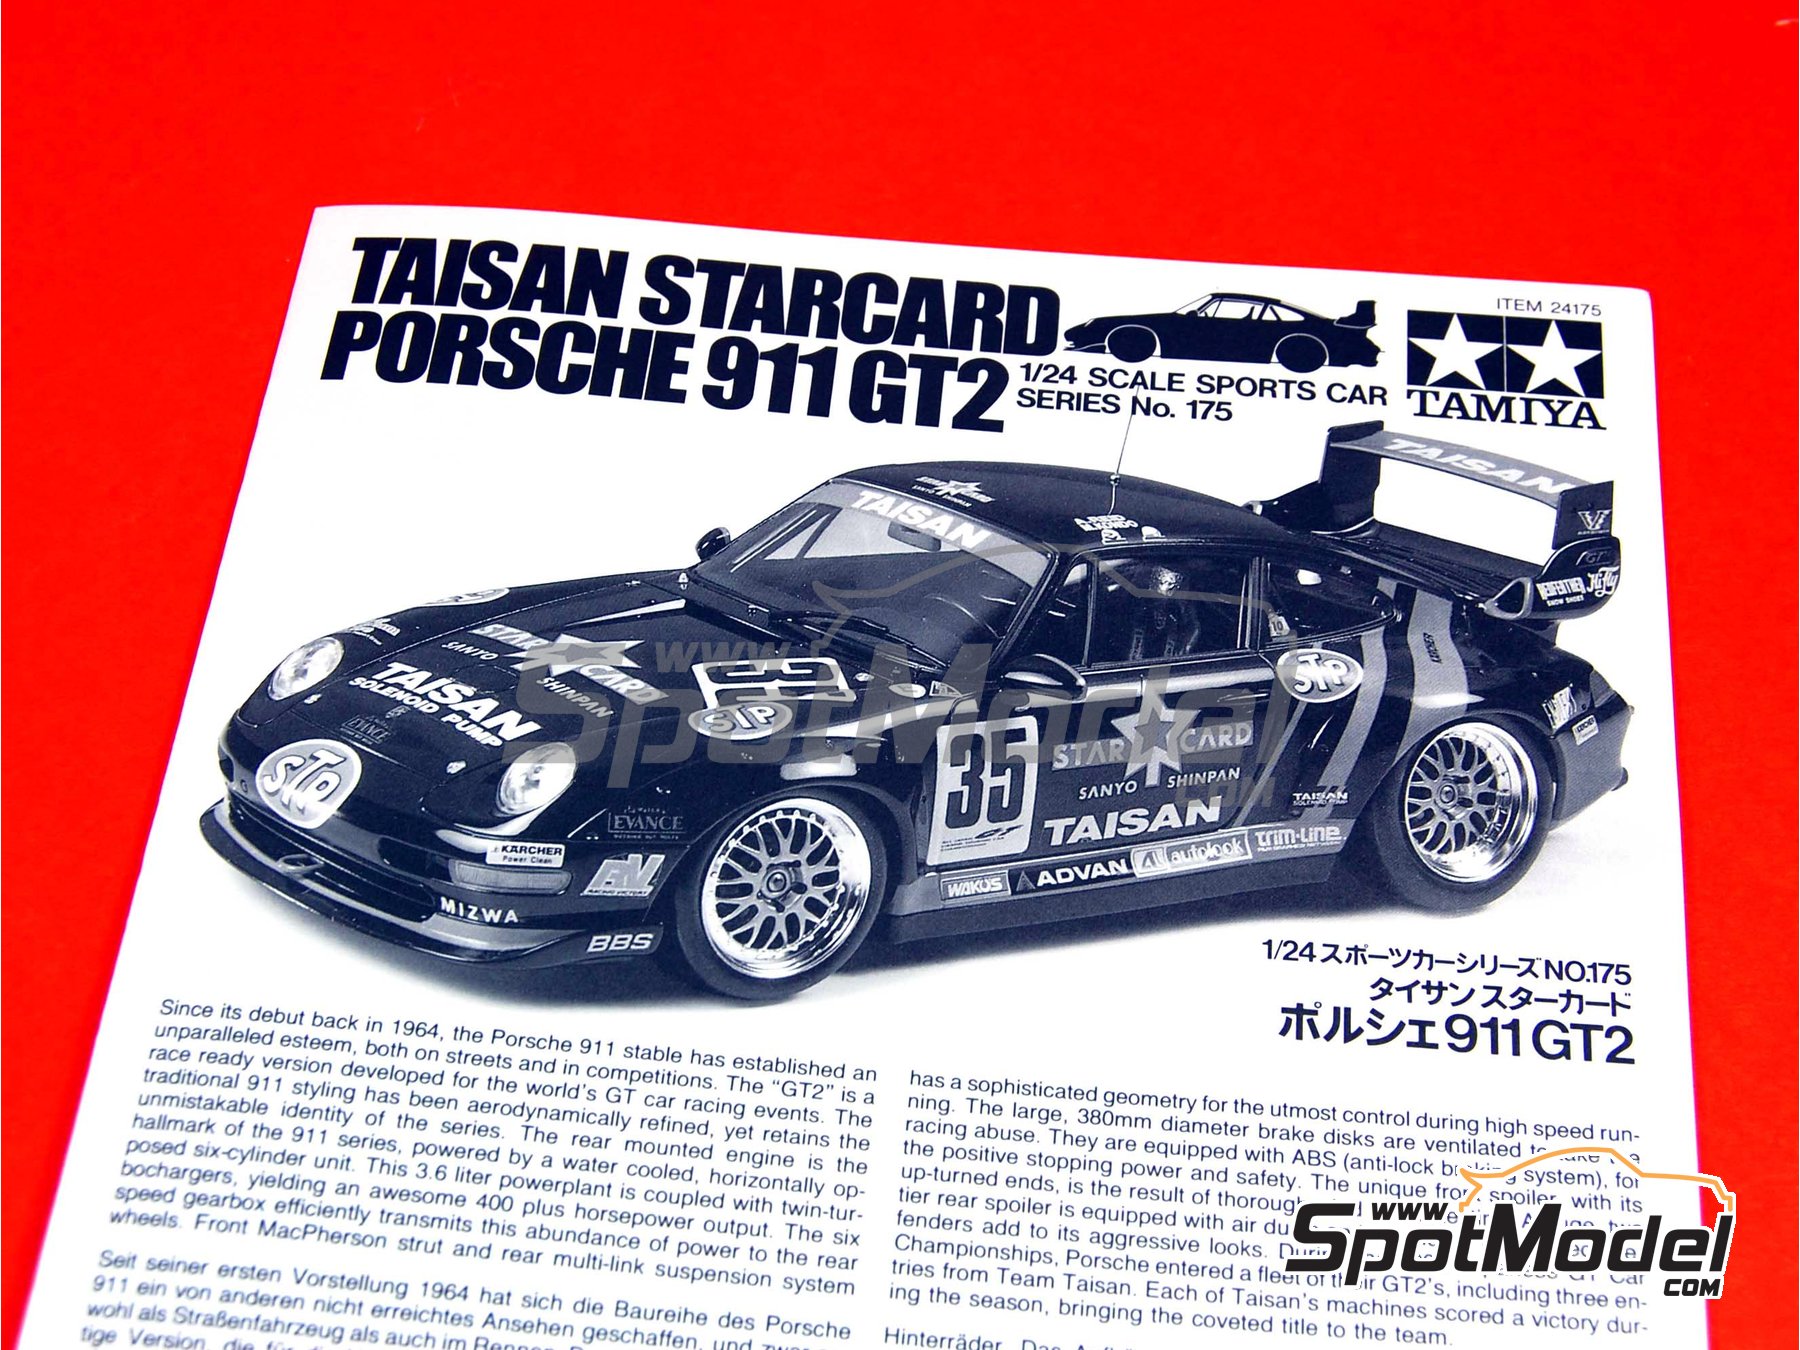 Tamiya 24175 1/24 Model Sports Car Kit Taisan Starcard Porsche 911 GT2 JGTC'95 